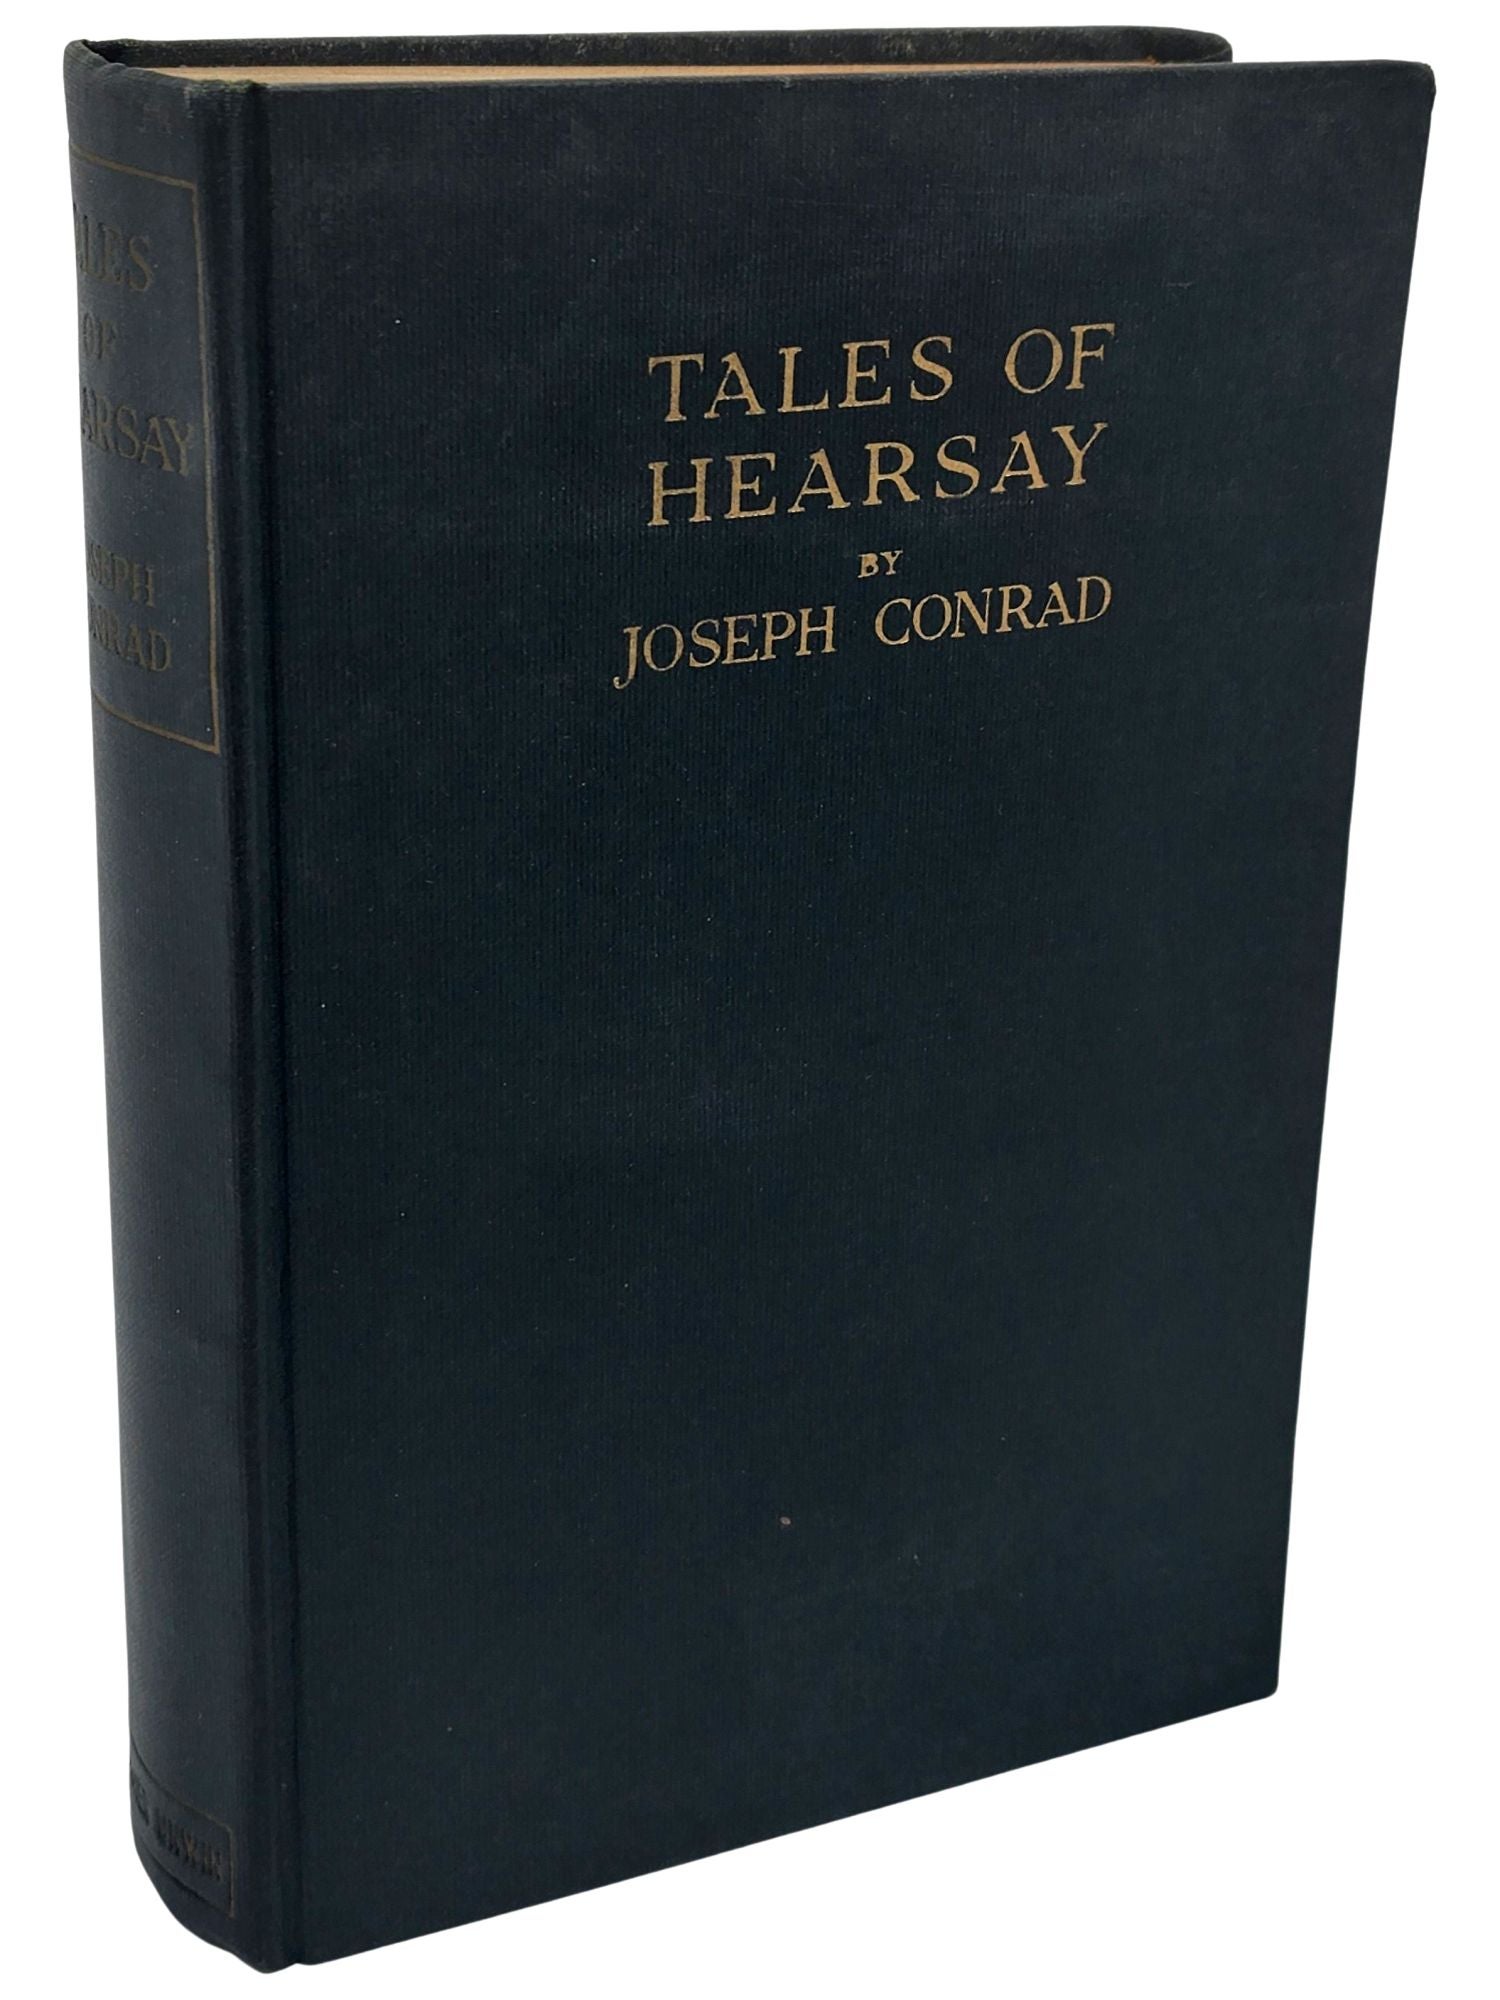 [Book #50764] TALES OF HEARSAY. Joseph Conrad.